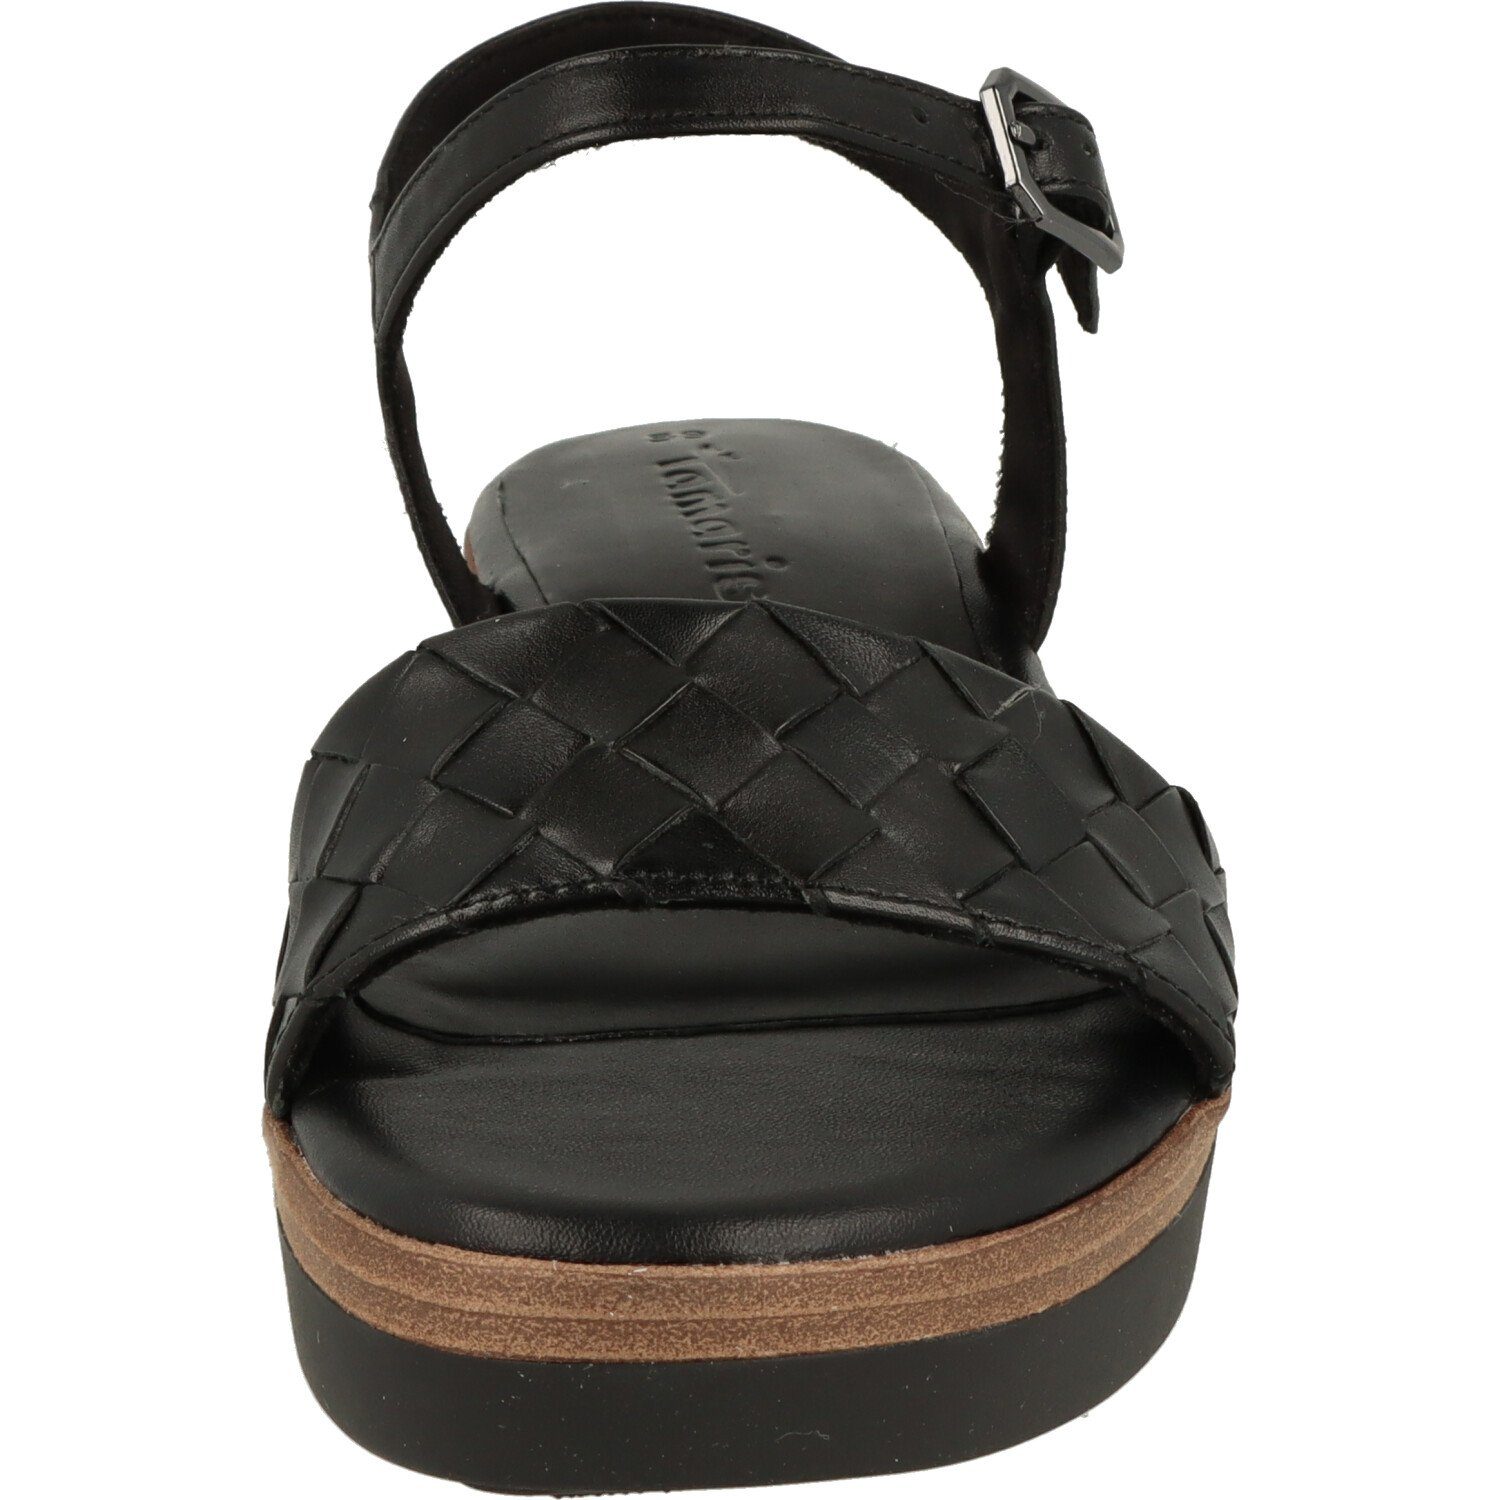 Komfort Damen Leder Black Sandalette Tamaris Schuhe Riemchen 1-28216-20 Sandalette